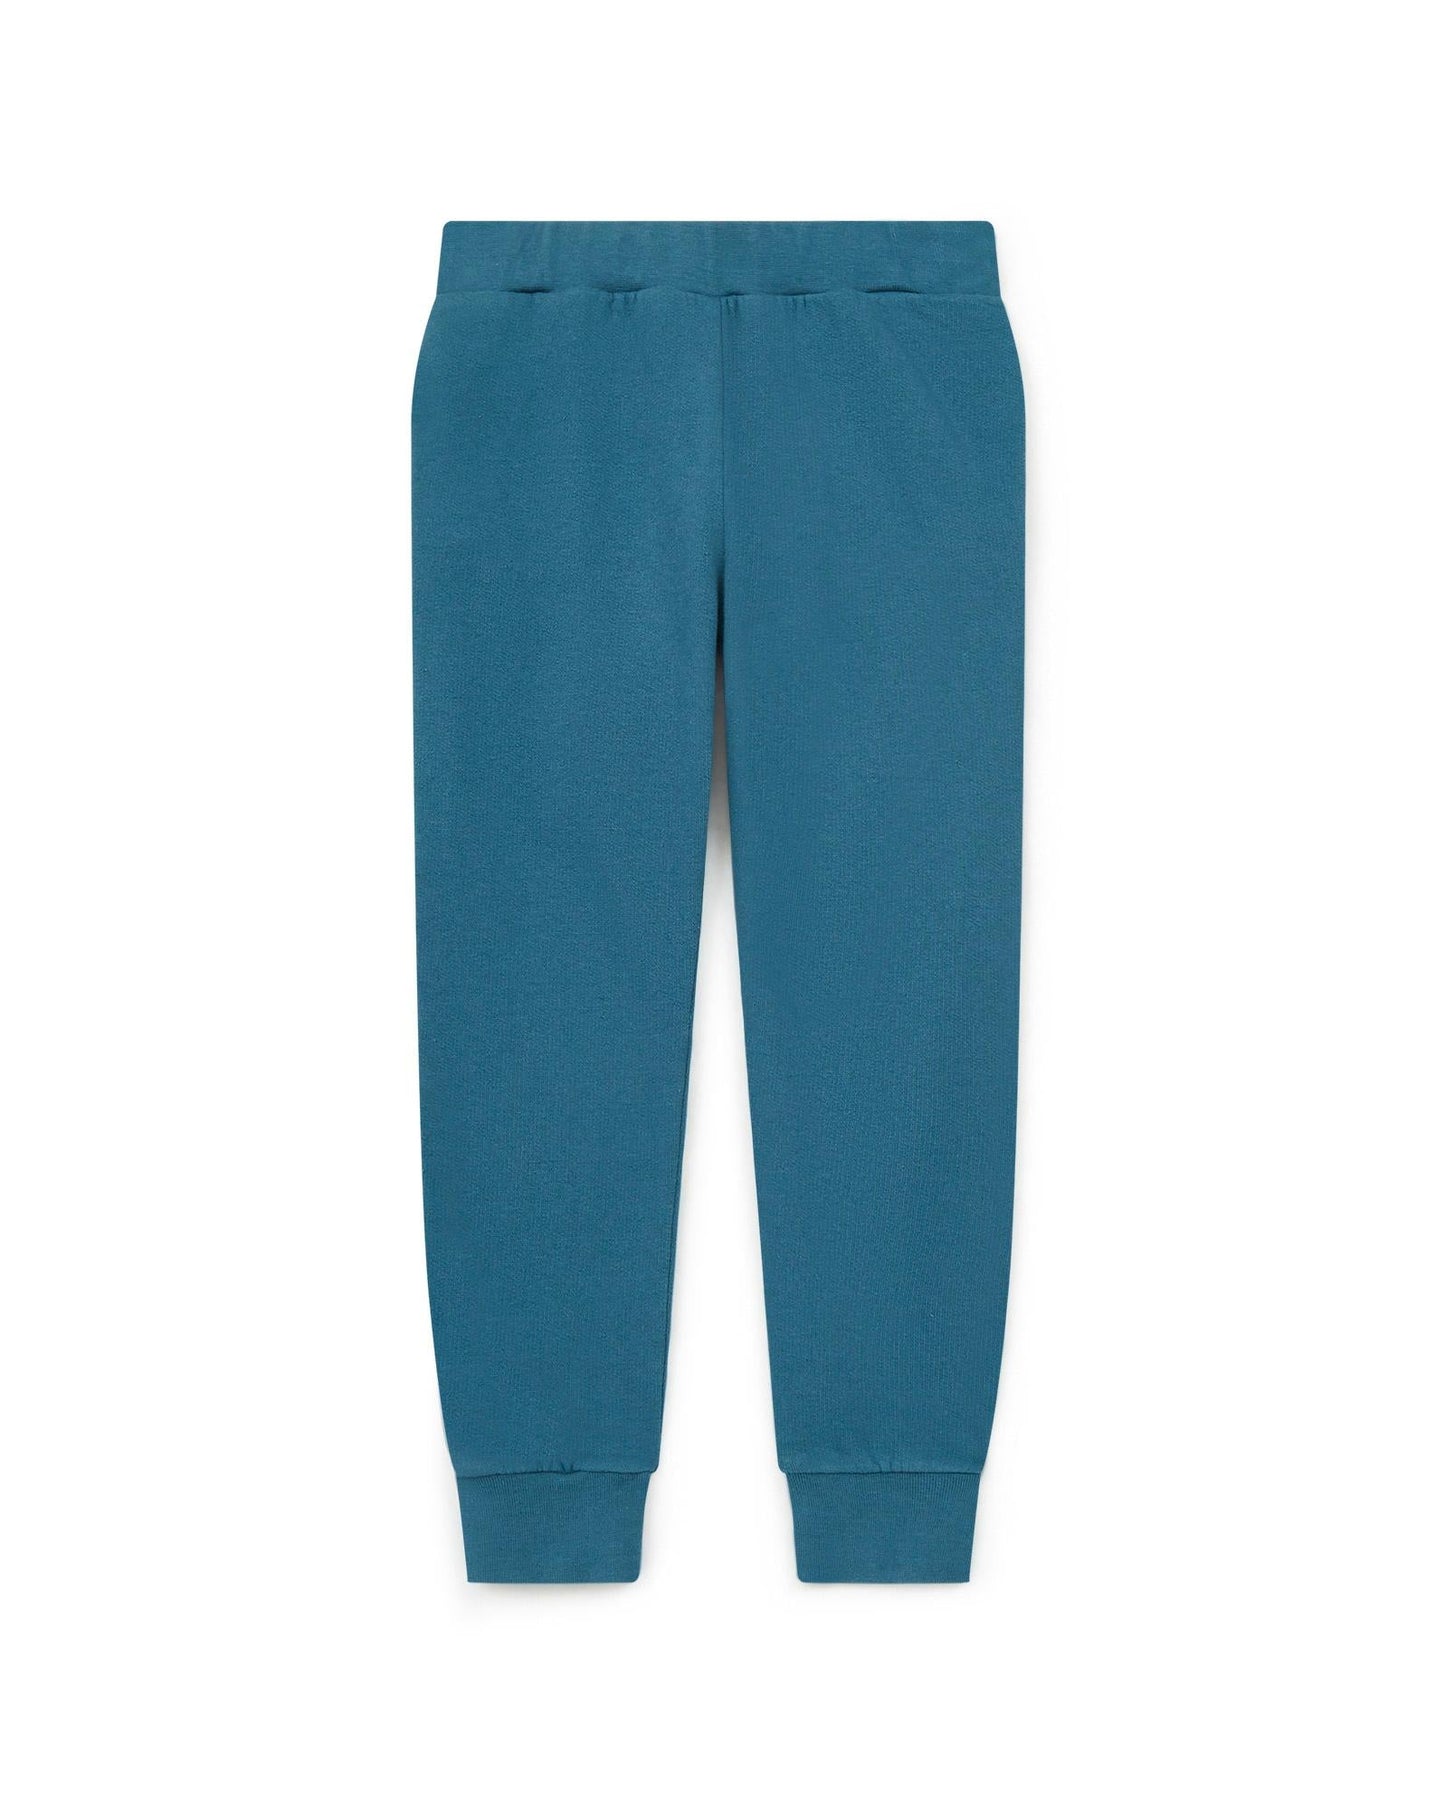 Pantalon - Jogging - bleu en 100% coton